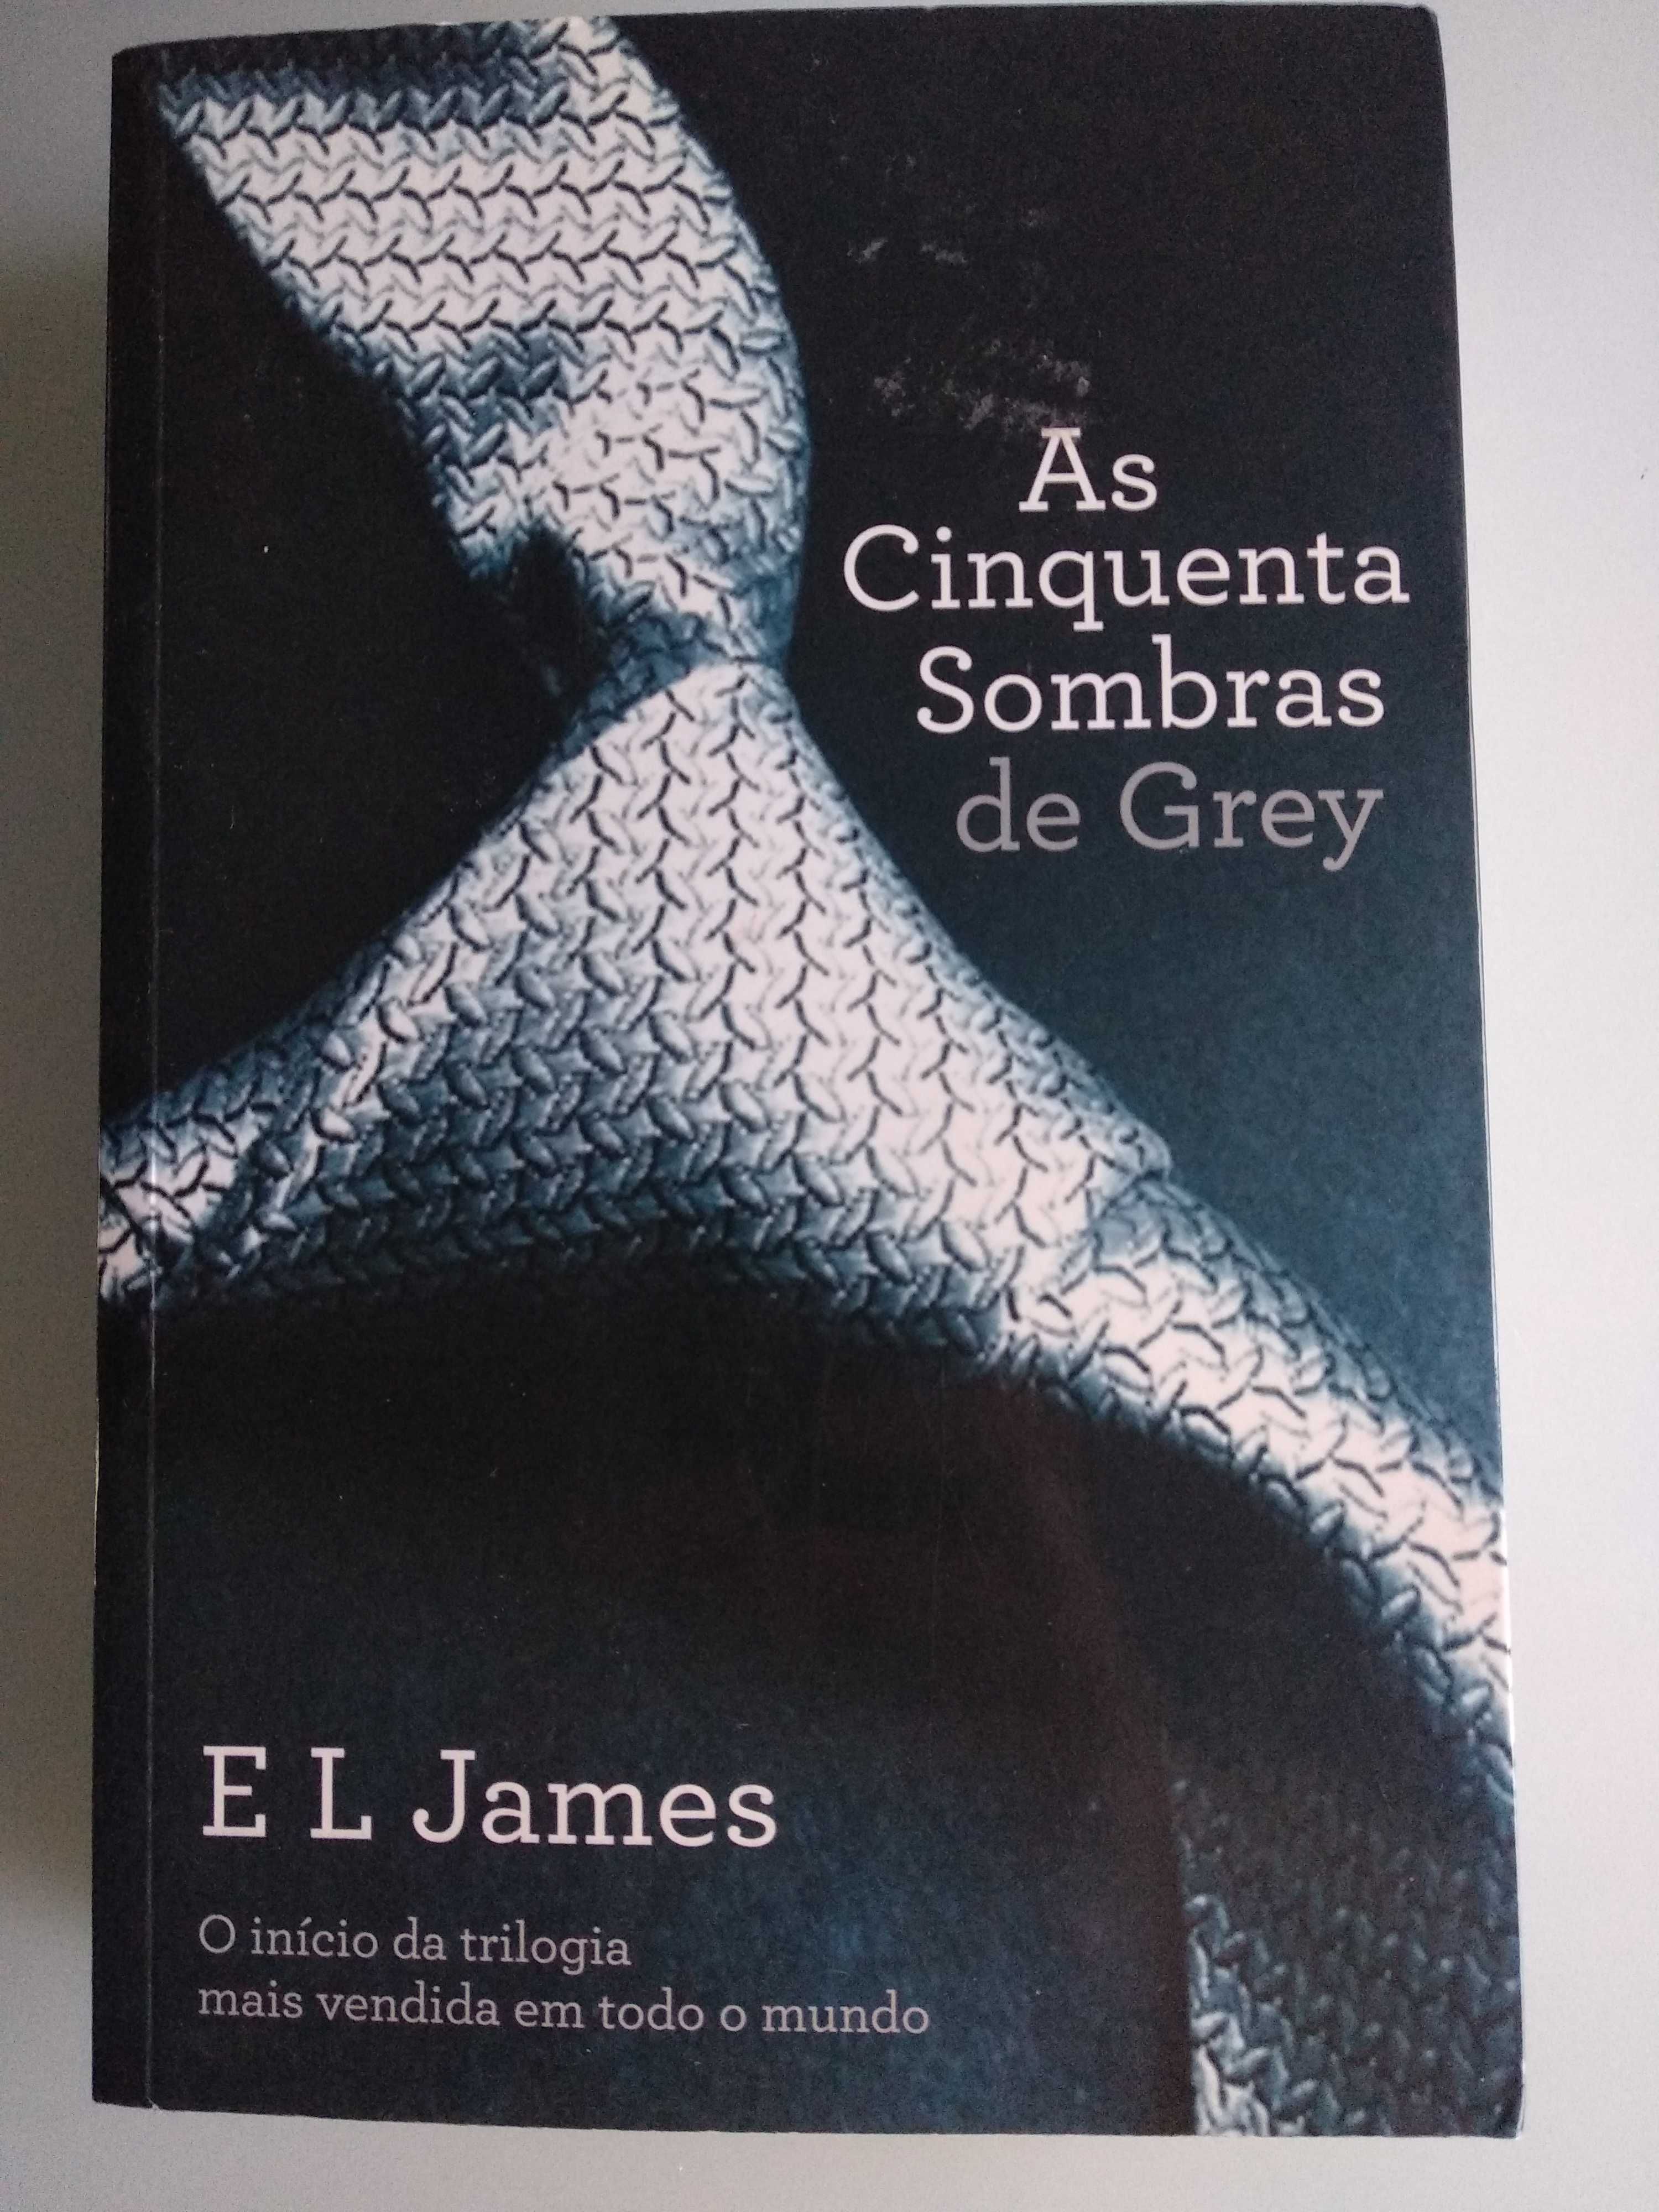 Livro "As Cinquentas Sombras de Grey" de E L James